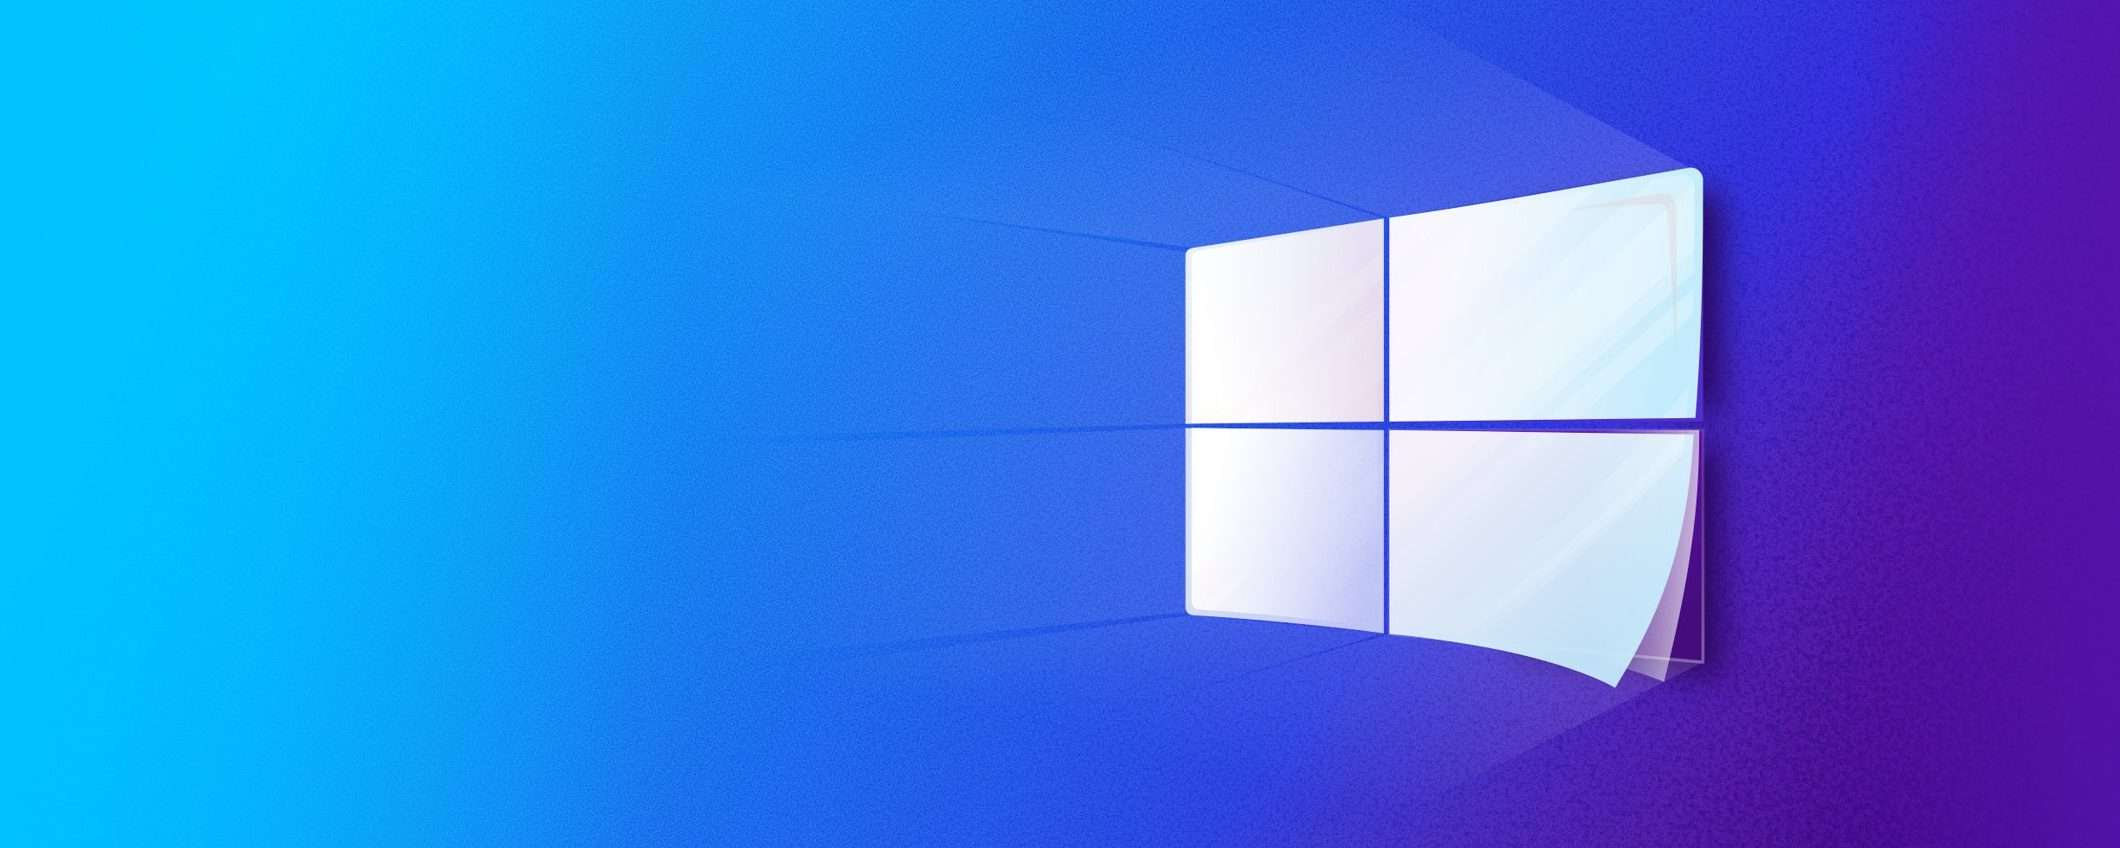 Windows 10 21H2 raggiungerà fine servizio a breve